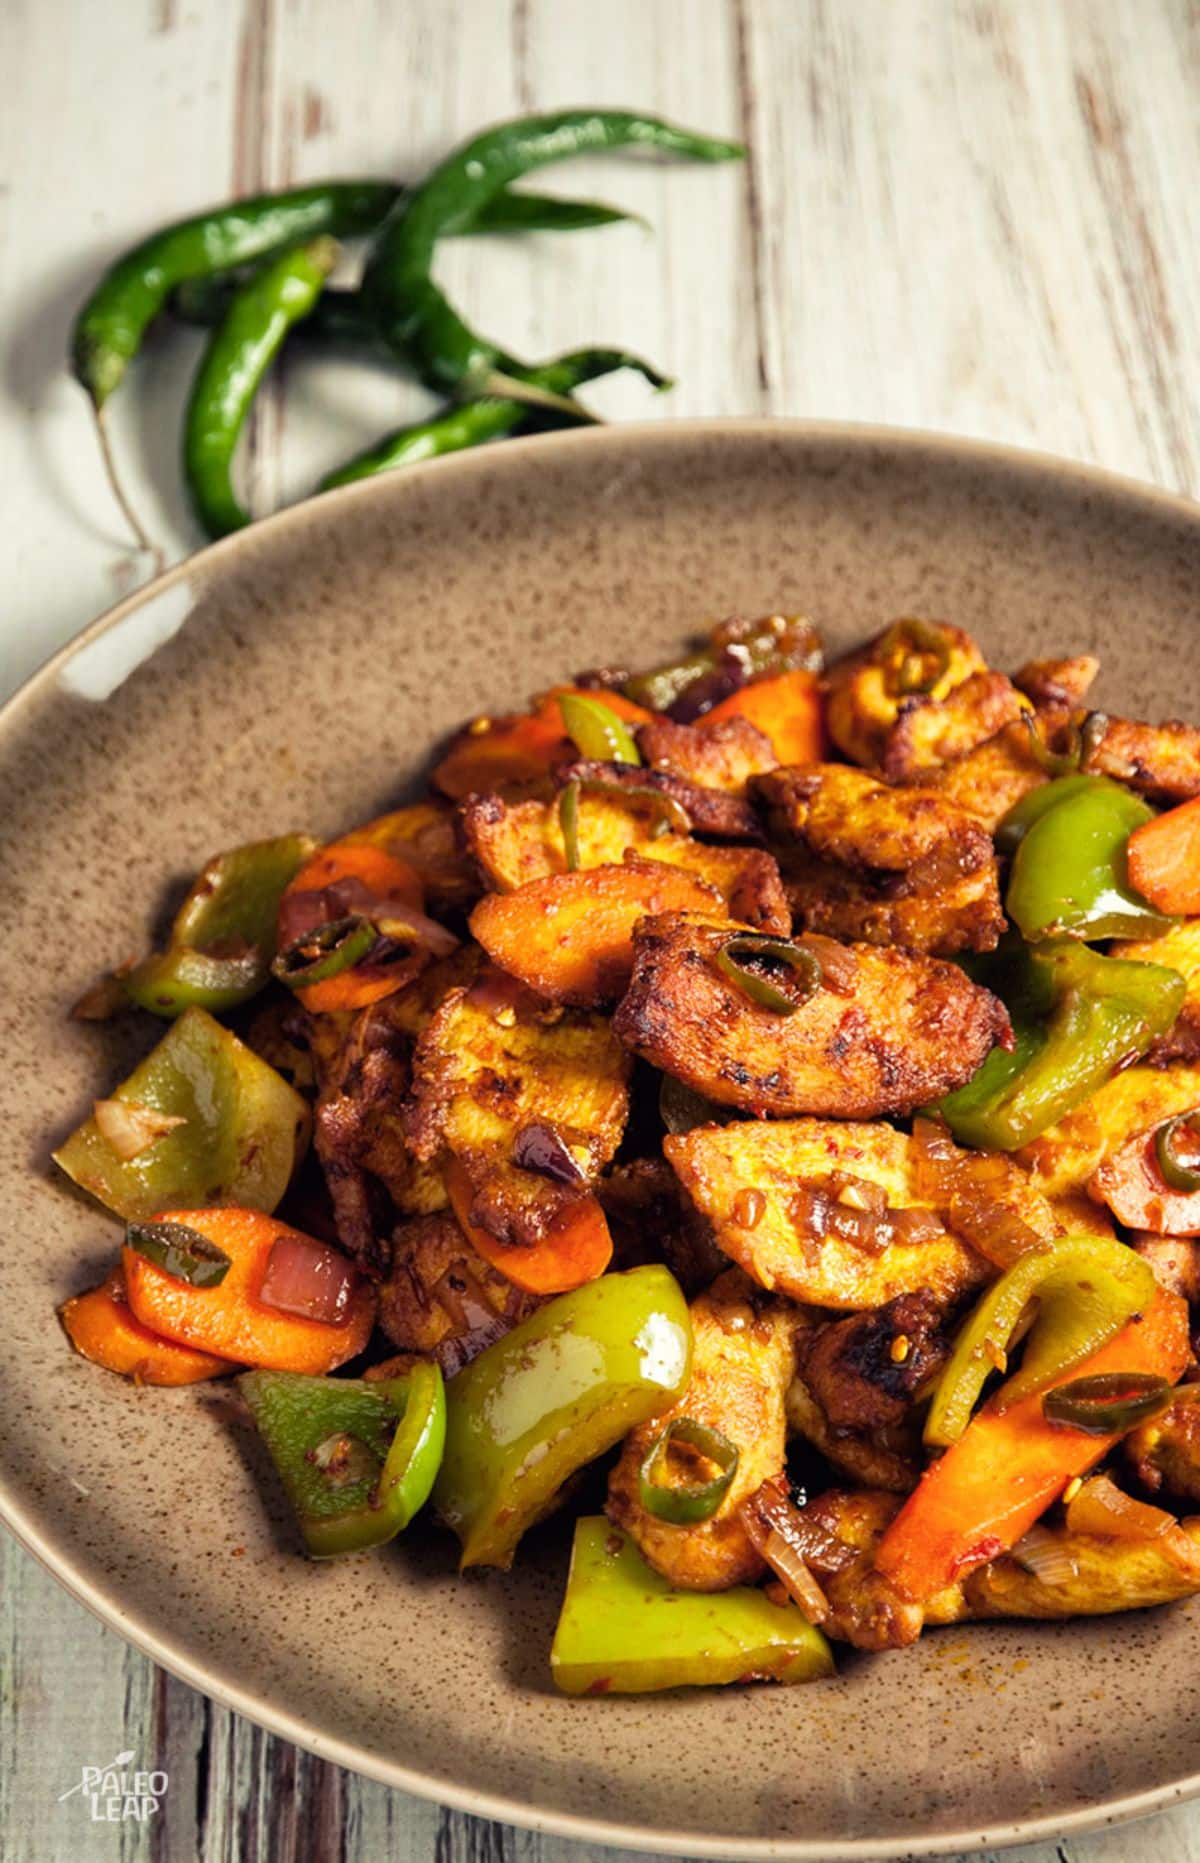 Spicy Indian Chicken Stir-Fry